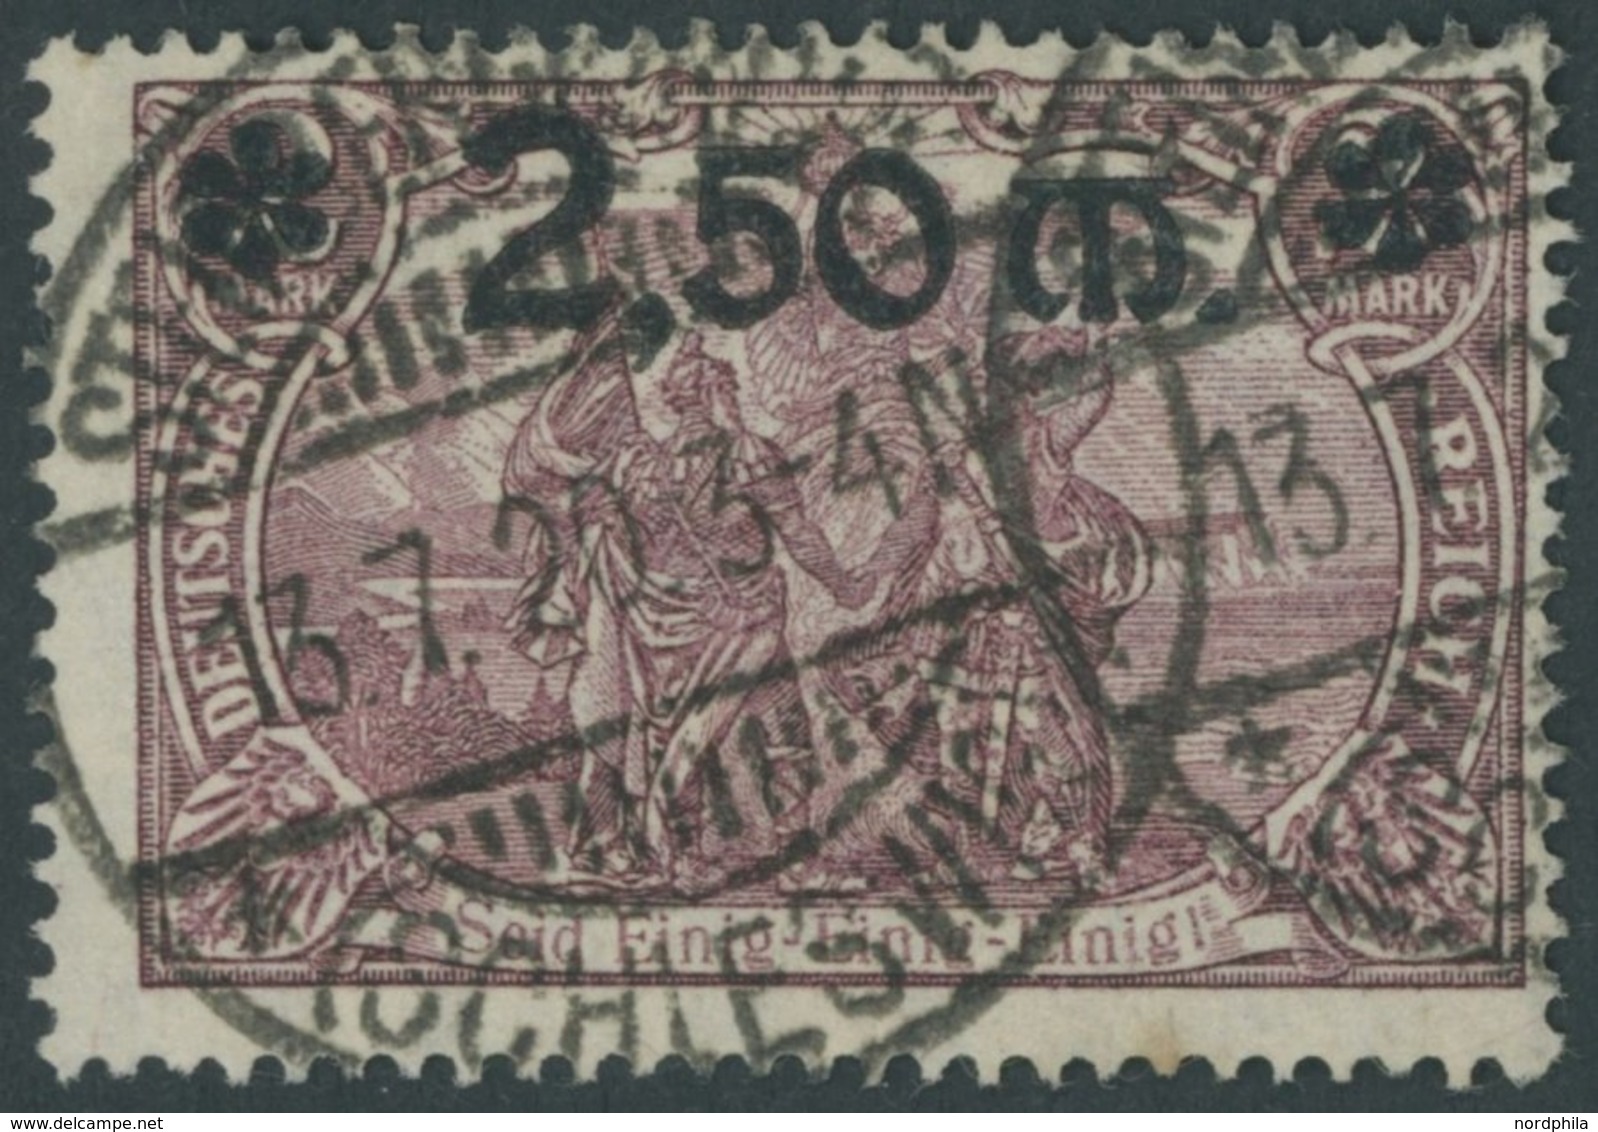 Dt. Reich 118a O, 1920, 2.50 M. Auf 2 M. Braunlila, Feinst, Kurzbefund Fleiner, Mi. 250.- - Gebraucht